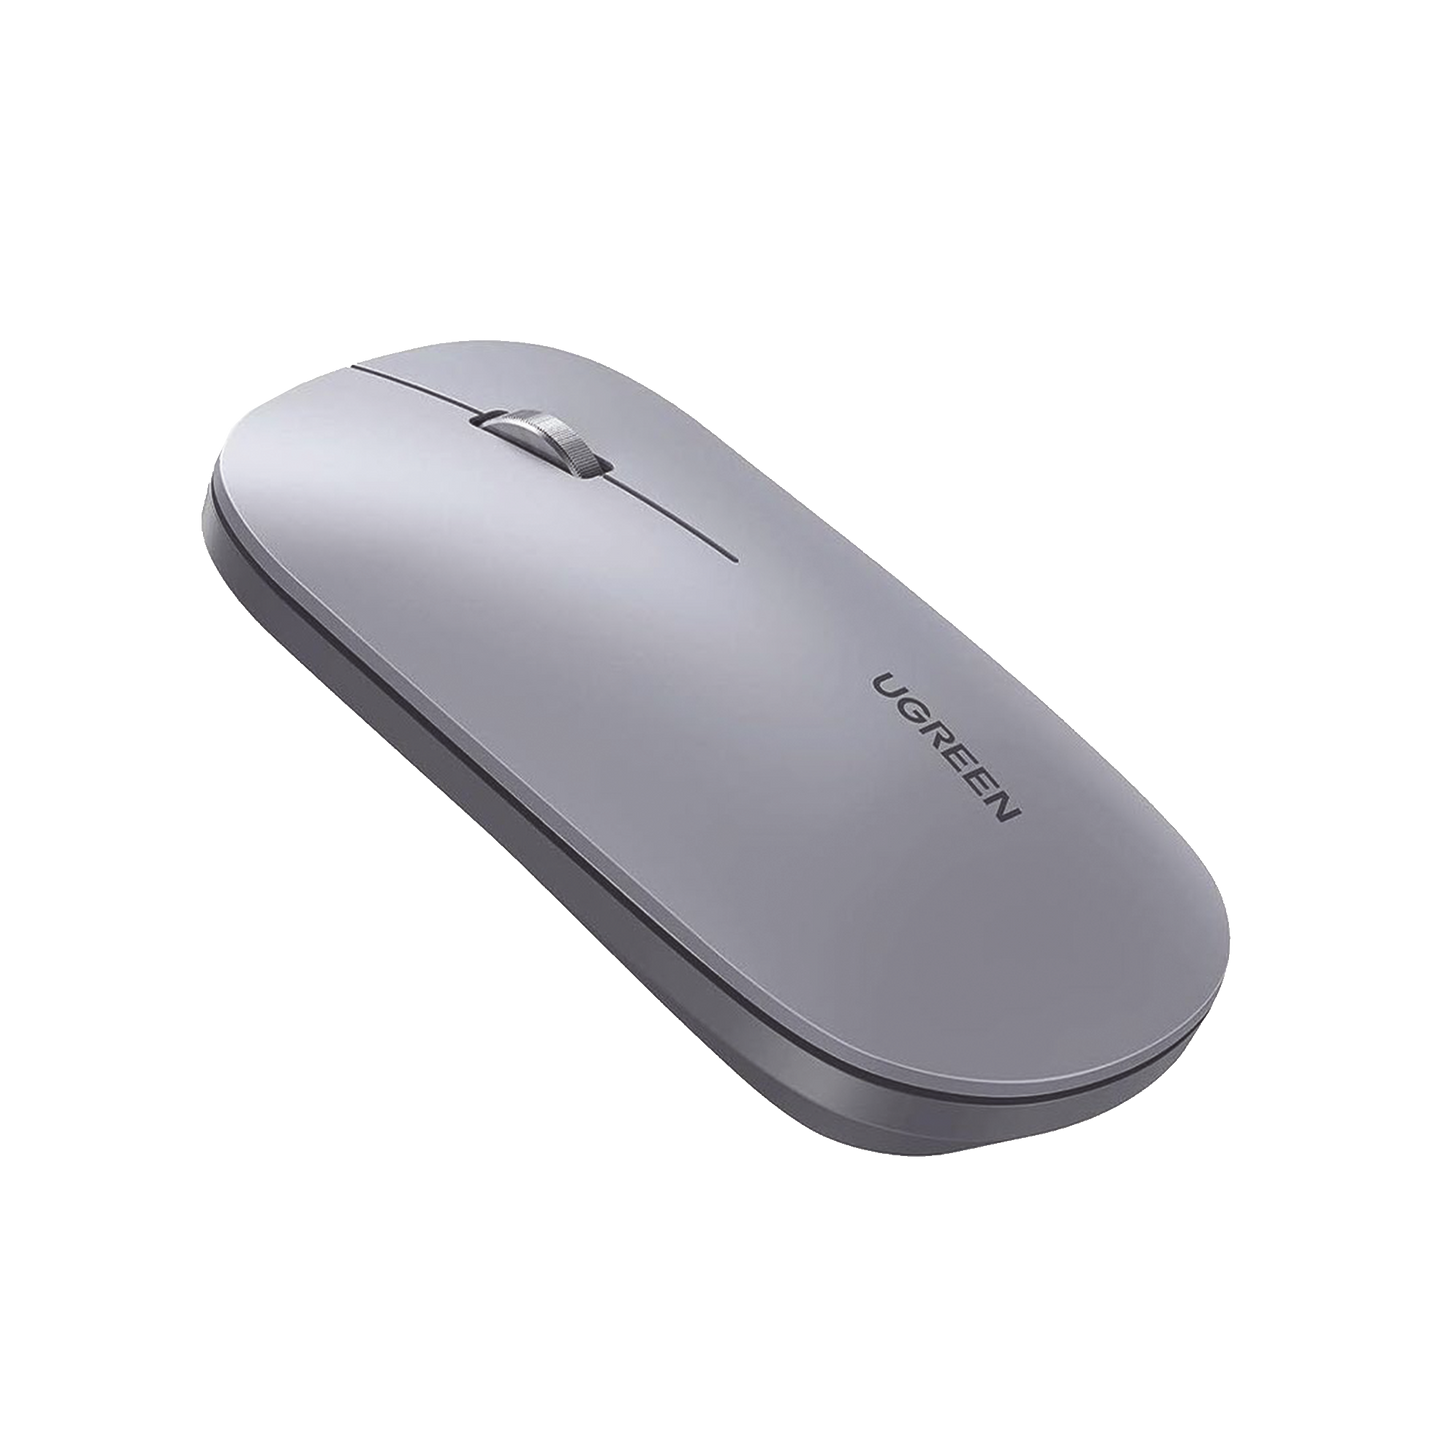 Mouse inalámbrico 2.4 GHz / Ultra Delgado y Silencioso / DPI 1000/1600/2000/4000 (Ajustable) / Alcance 10m / Scroll de Aluminio / Adaptable a diferentes superficies / Diseño suave al tacto / Contiene Receptor USB / Color Gris